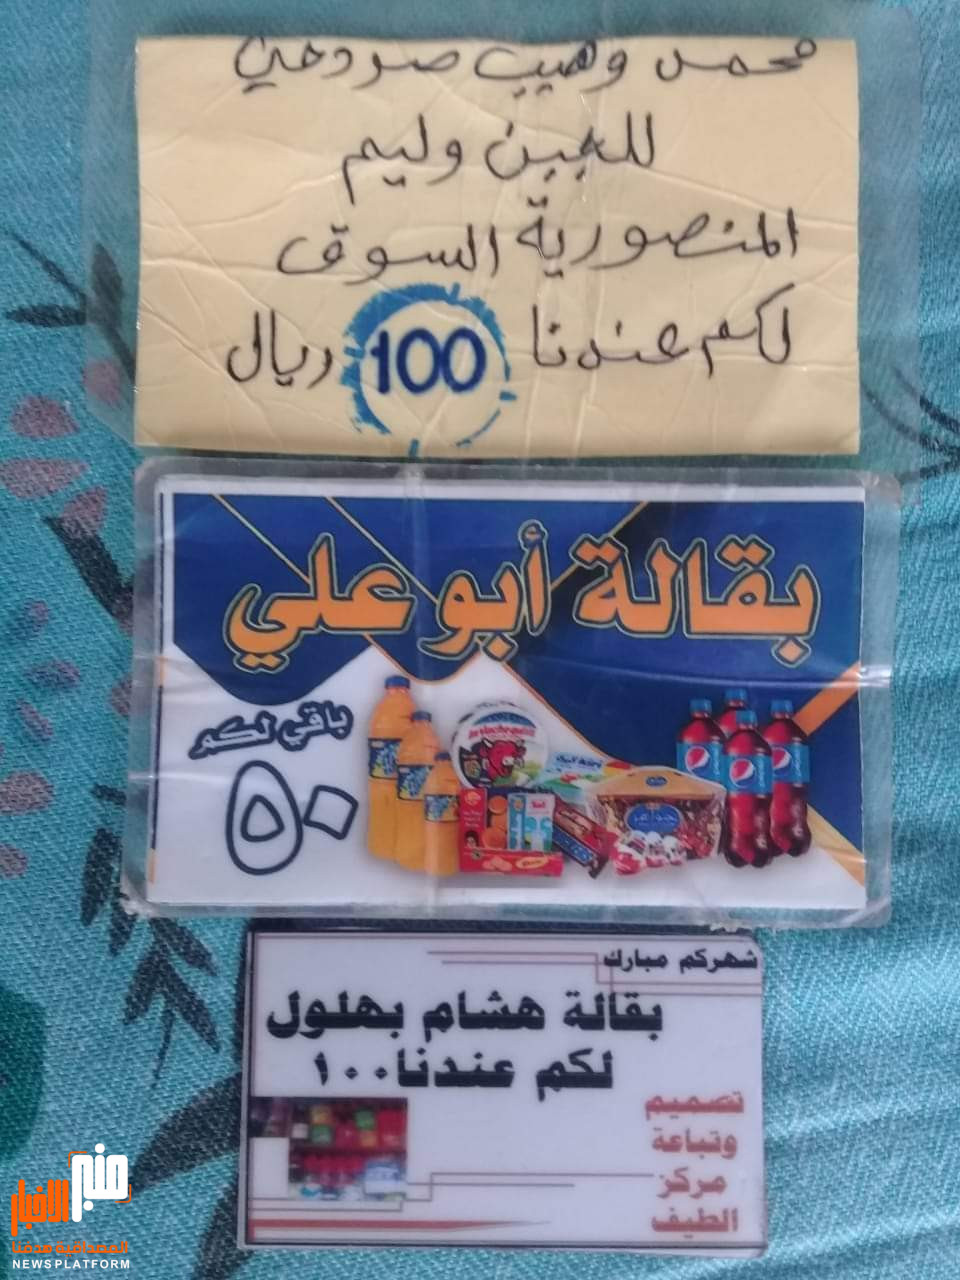 إختراع قصاصات ورقية..بسبب العملة المتهالكة في مناطق سيطرة الحوثيين(صورة)